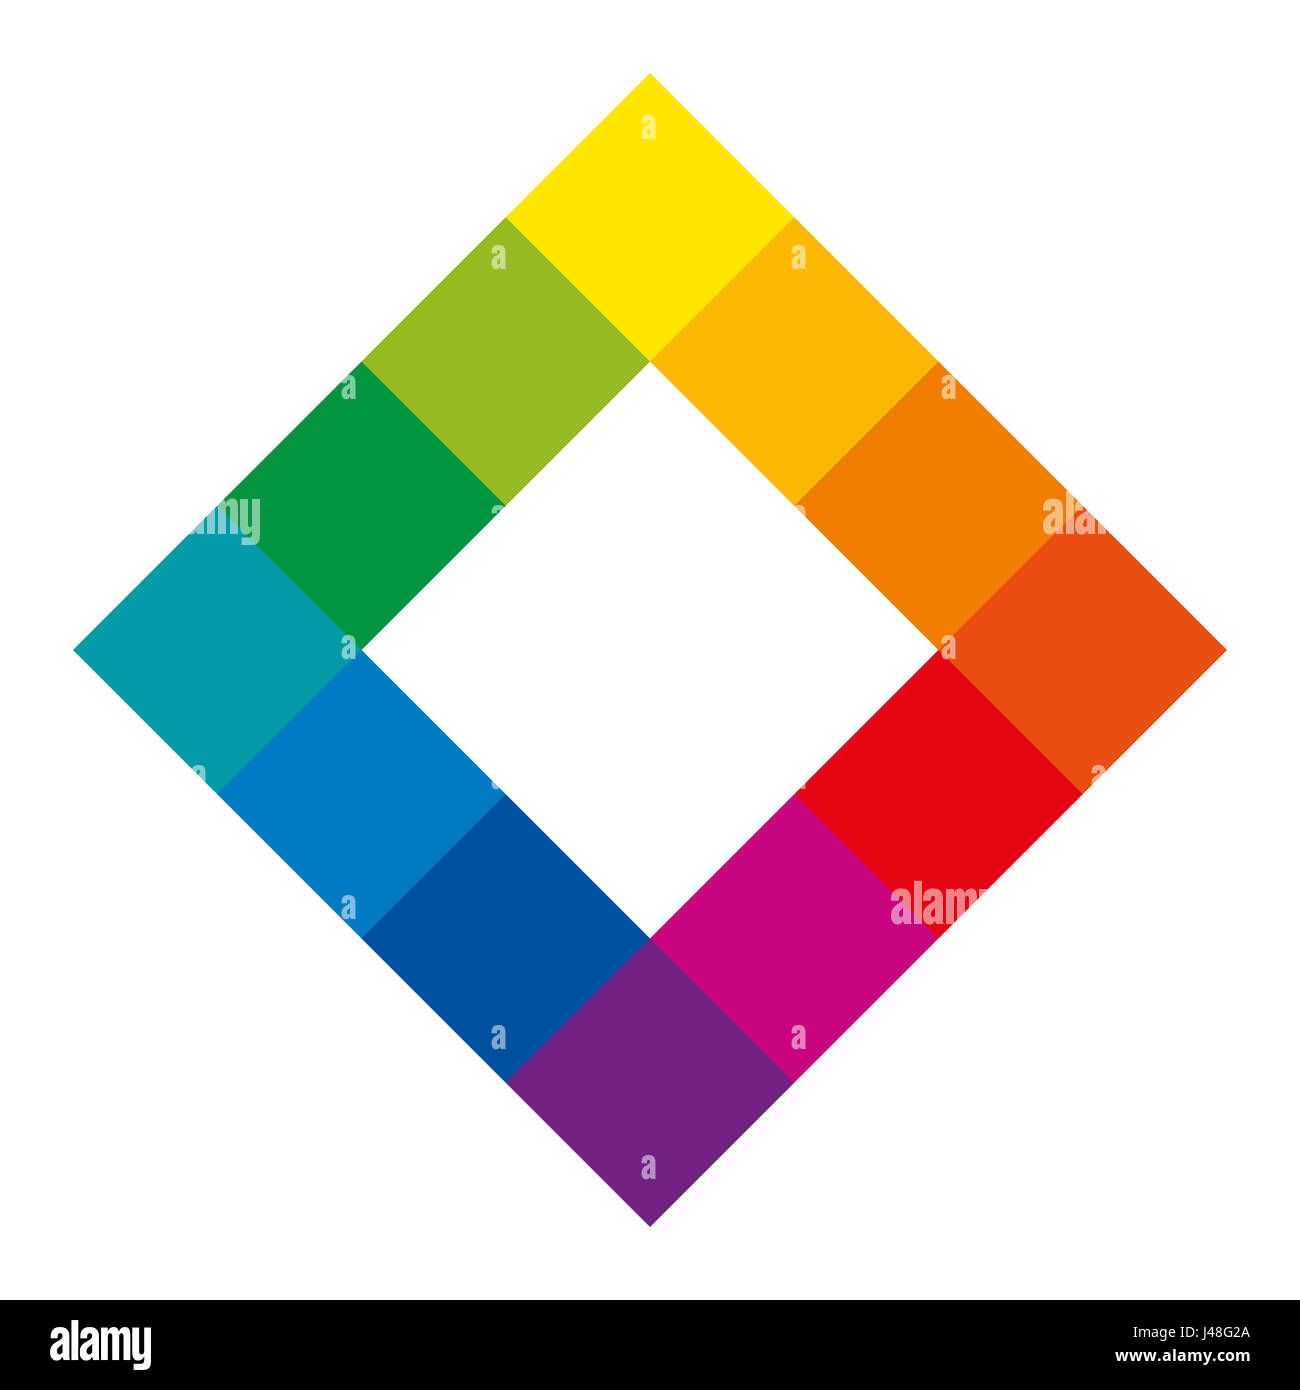 12 tonos de colores únicos de la rueda de colores en forma cuadrada que muestra la relación entre la enseñanza primaria, secundaria y terciaria de colores. Foto de stock